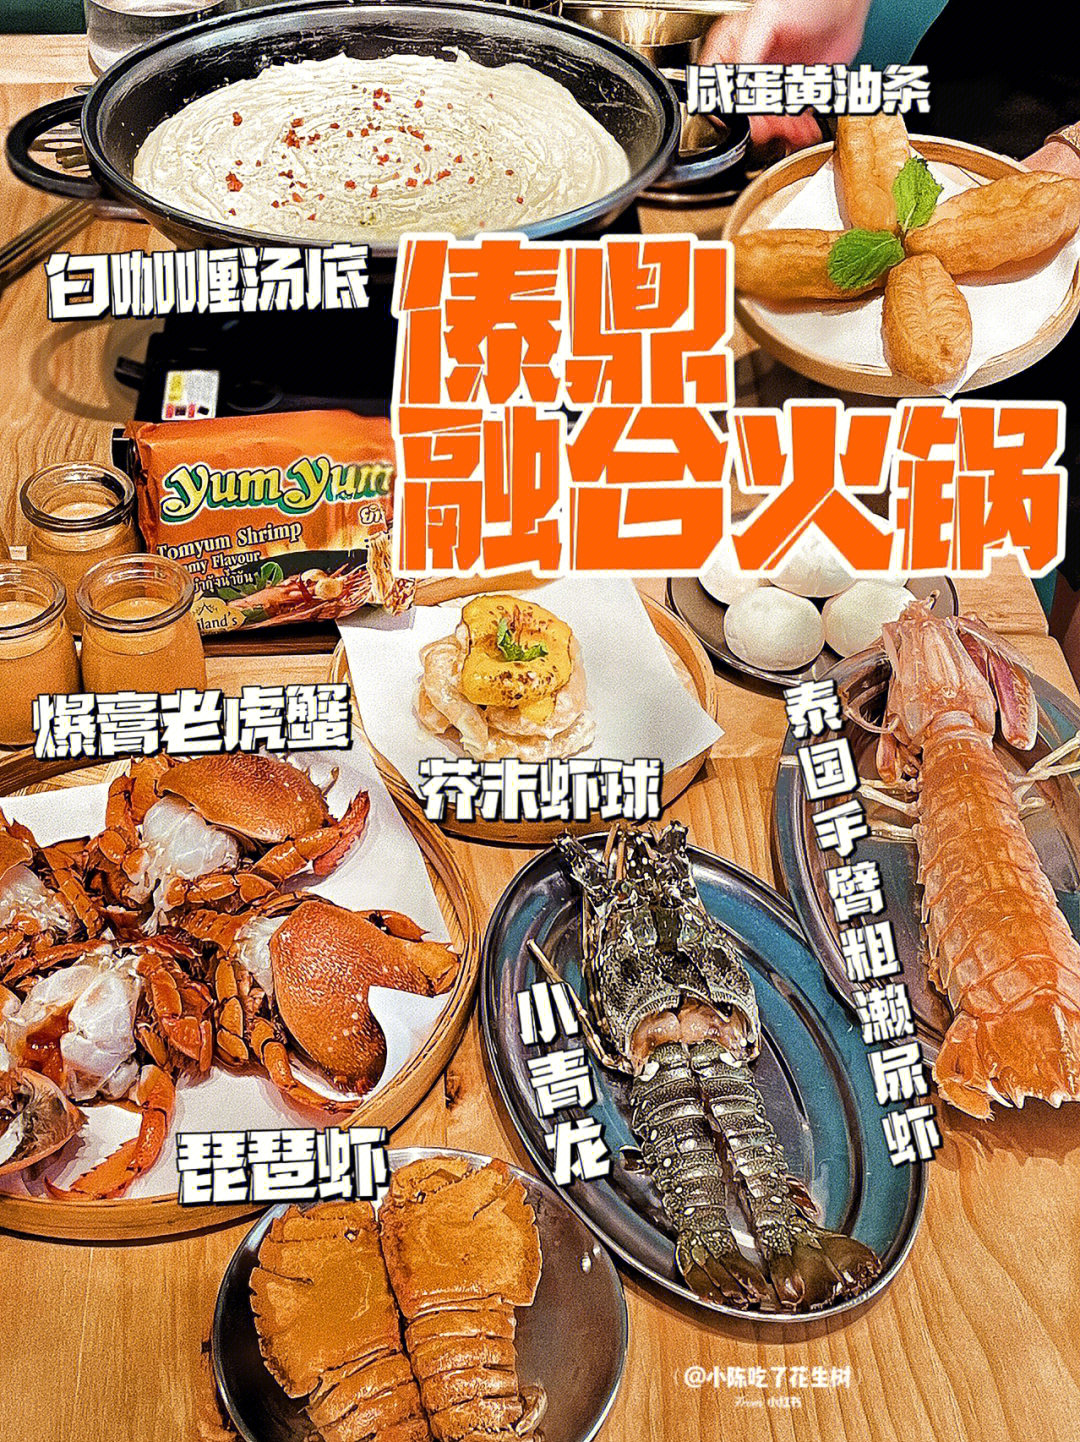 6615人餐99餐里滴海鲜在泰国都是敲出名,有比手臂还粗的濑尿虾